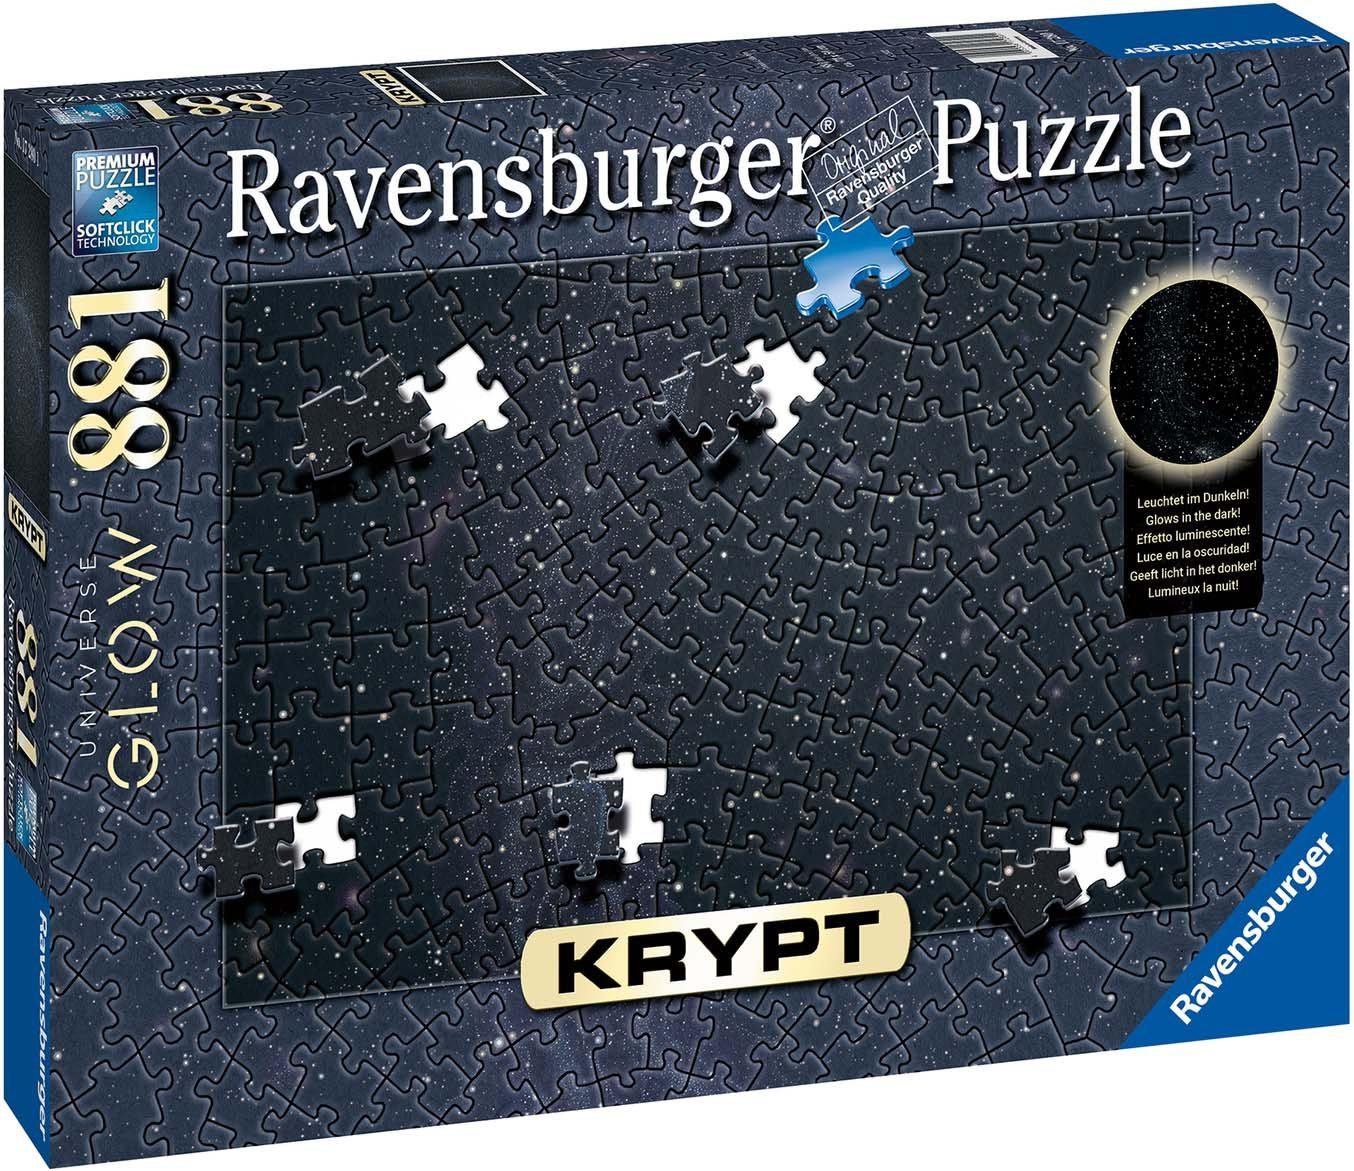 Ravensburger Puzzle Krypt - Made Germany, in Universe Glow, Puzzleteile, weltweit - schützt 881 Wald FSC®